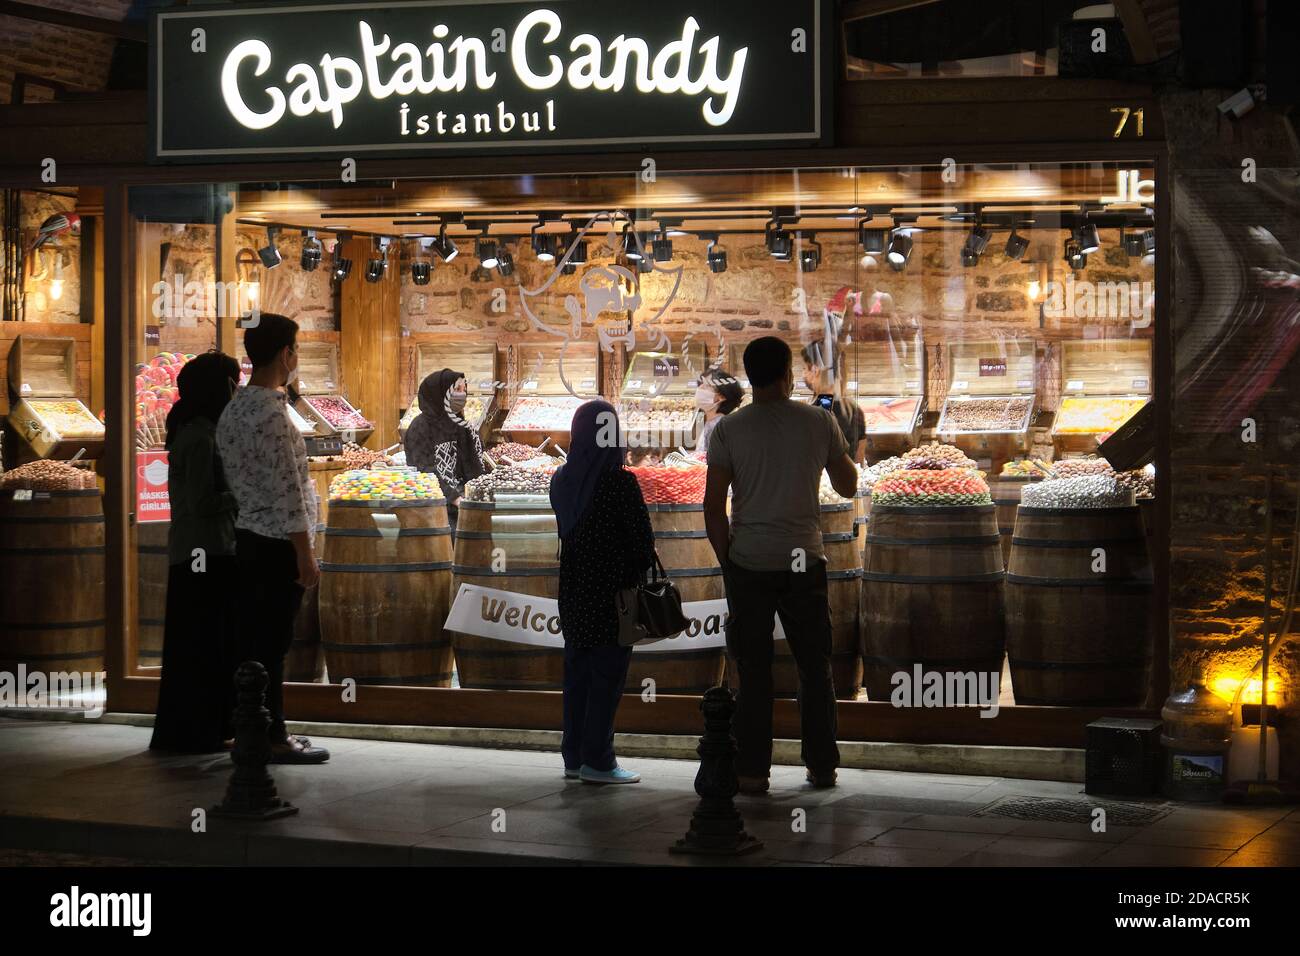 Les clients qui ont des masques de visage à l'intérieur et à l'extérieur regardent des bonbons dans un magasin Captain Candy, Istanbul, Turquie Banque D'Images